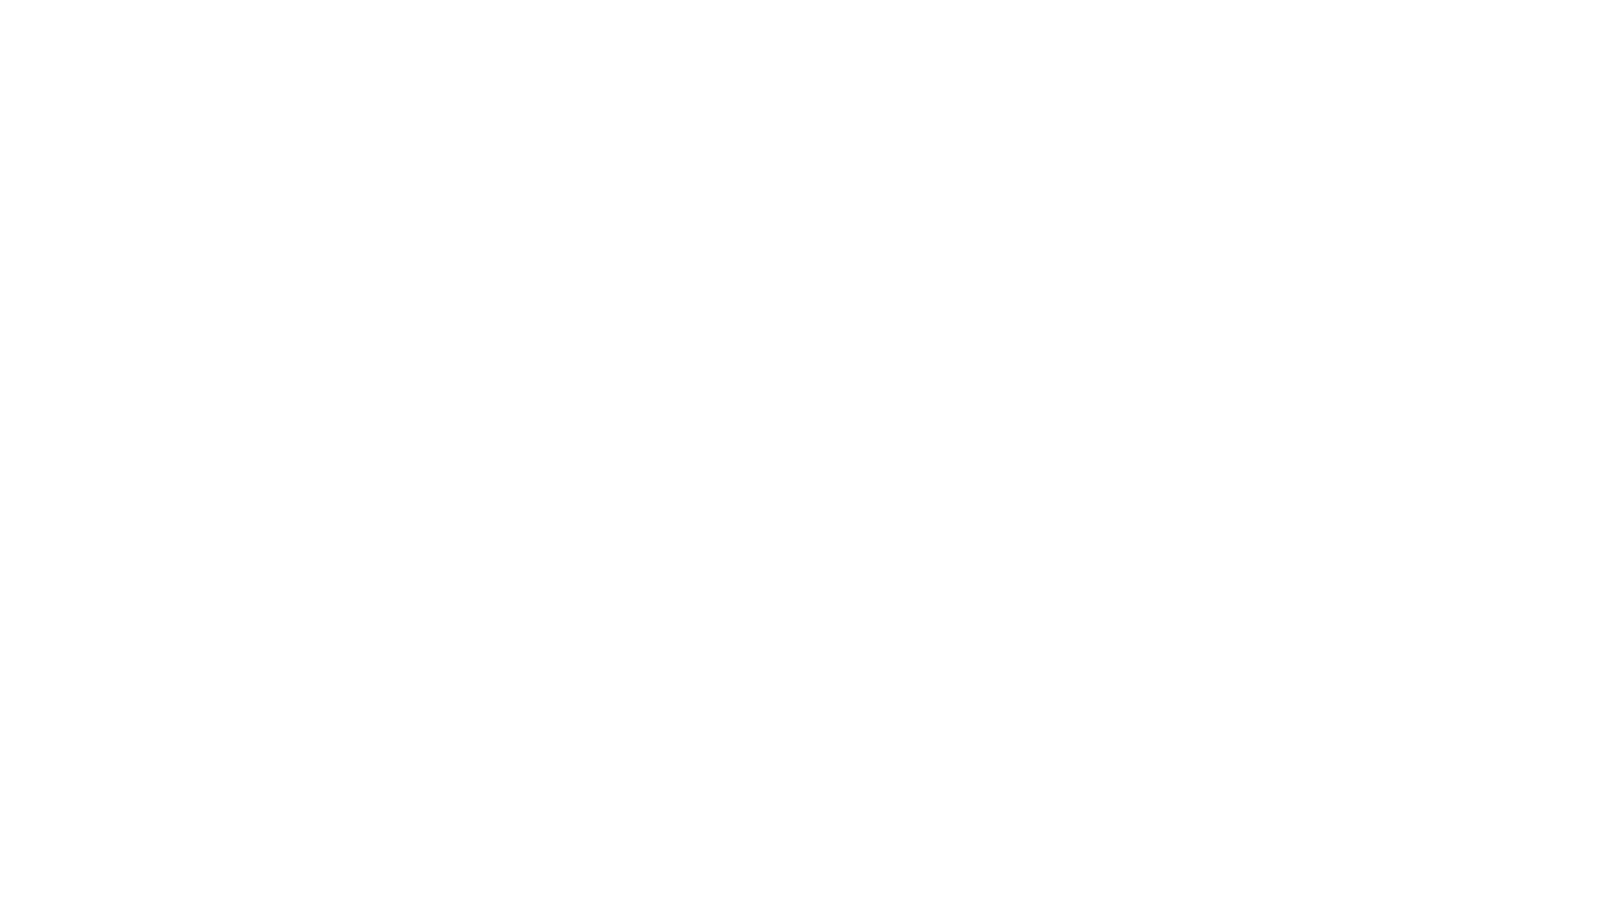 Jéssica Moreira